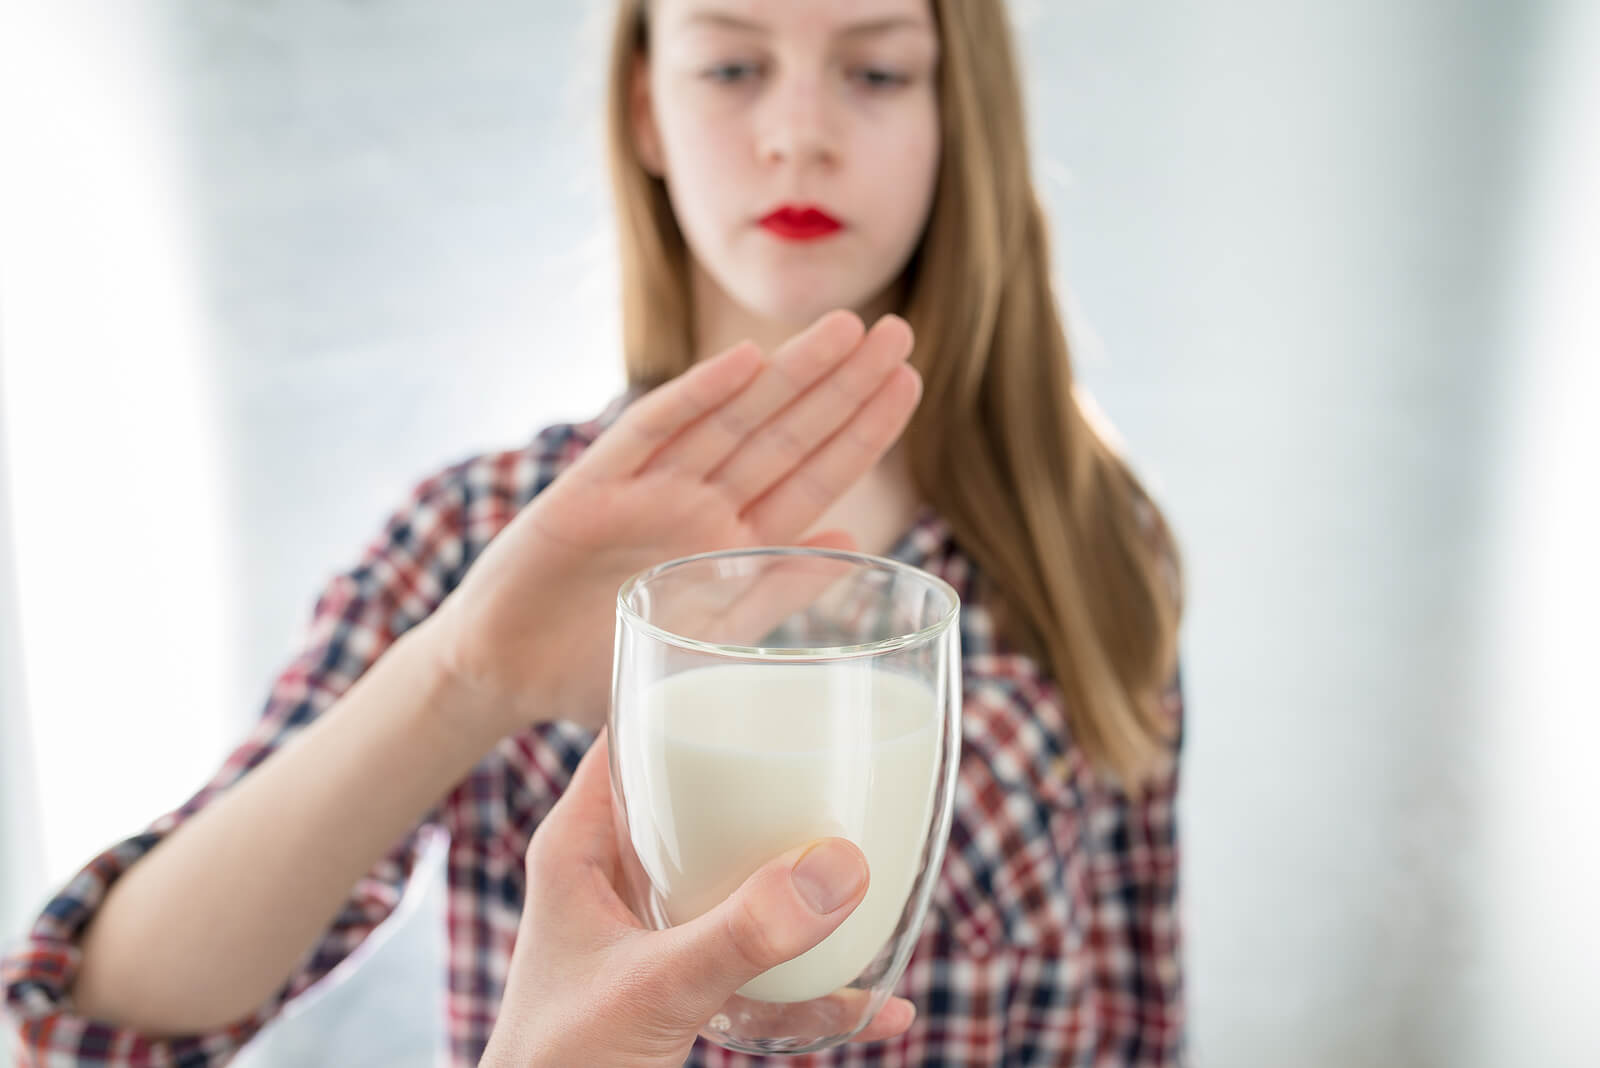 Femme intolérante au lactose avec envie de vomir.